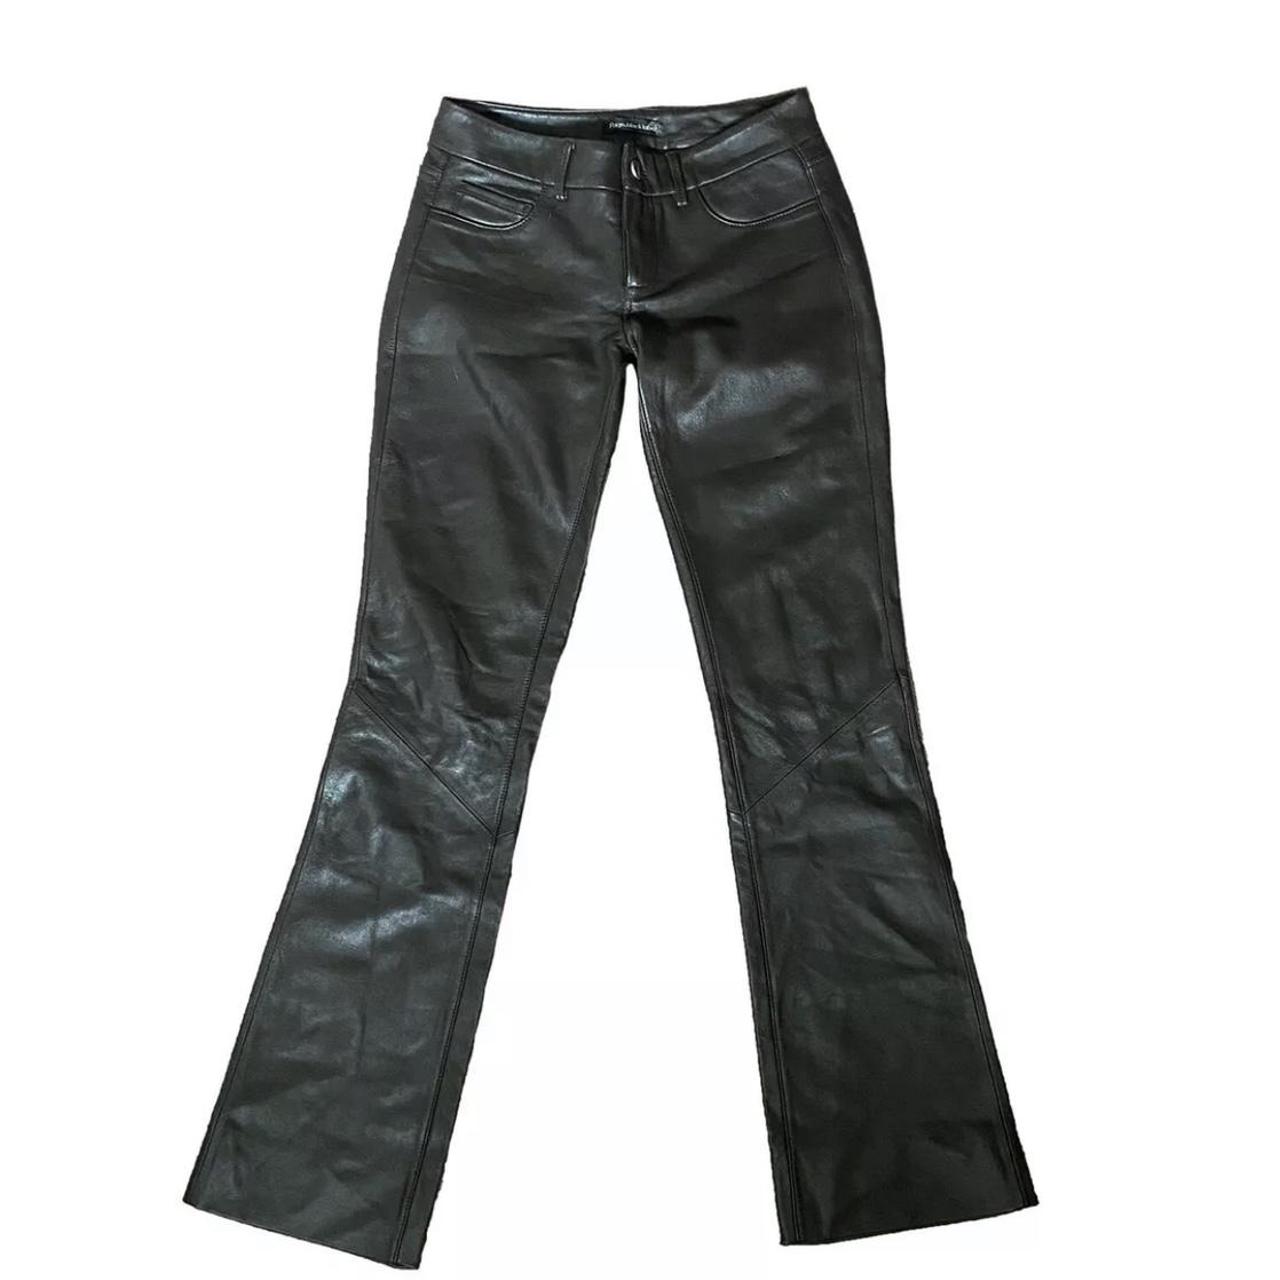 Paige Black Label 100% leather pants Size-0... - Depop